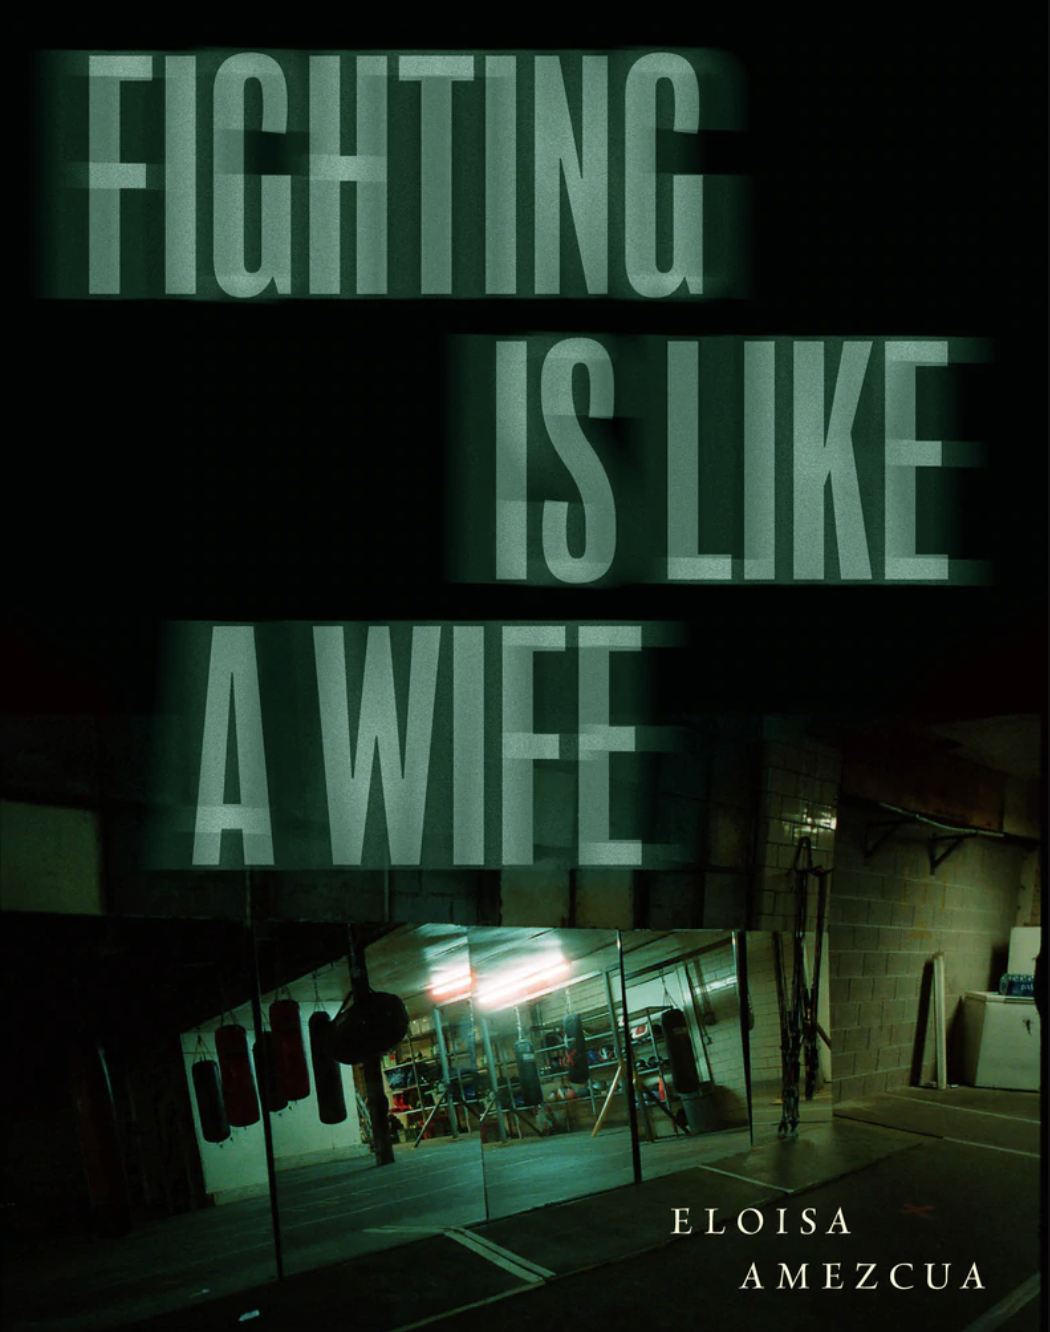 Fighting is Like a Wife, Eloisa Amezcua